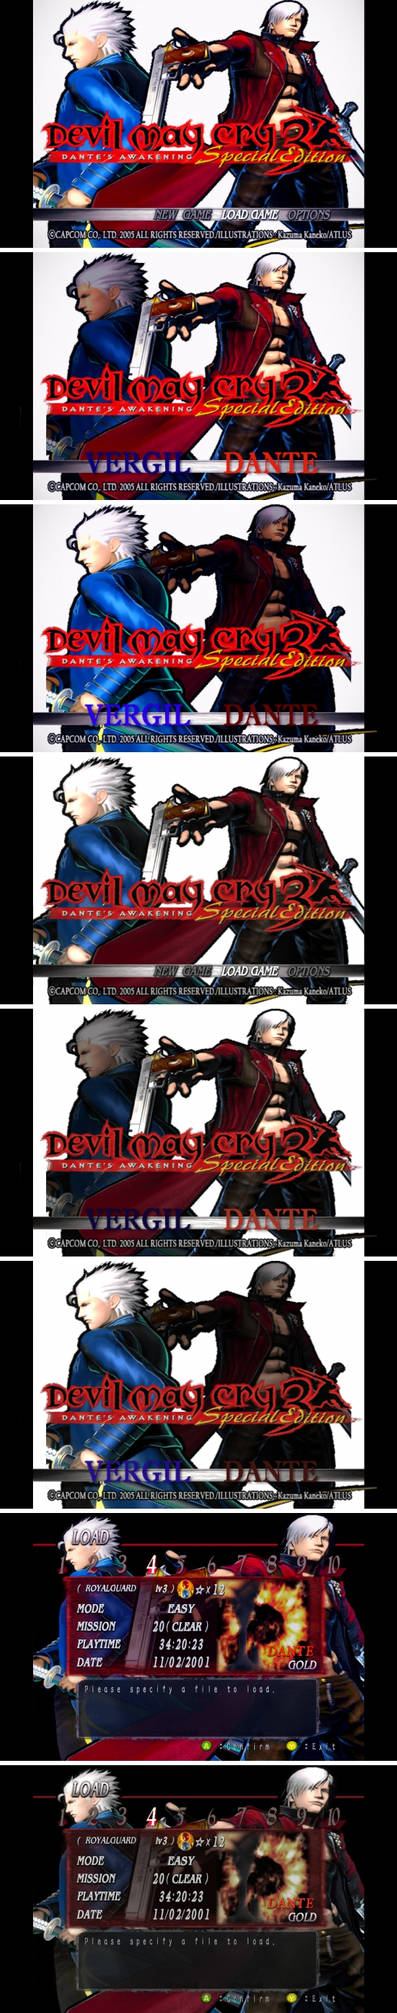 Devil May Cry 3 Vergil Promo Art Render PNG by VigoorDesigns on